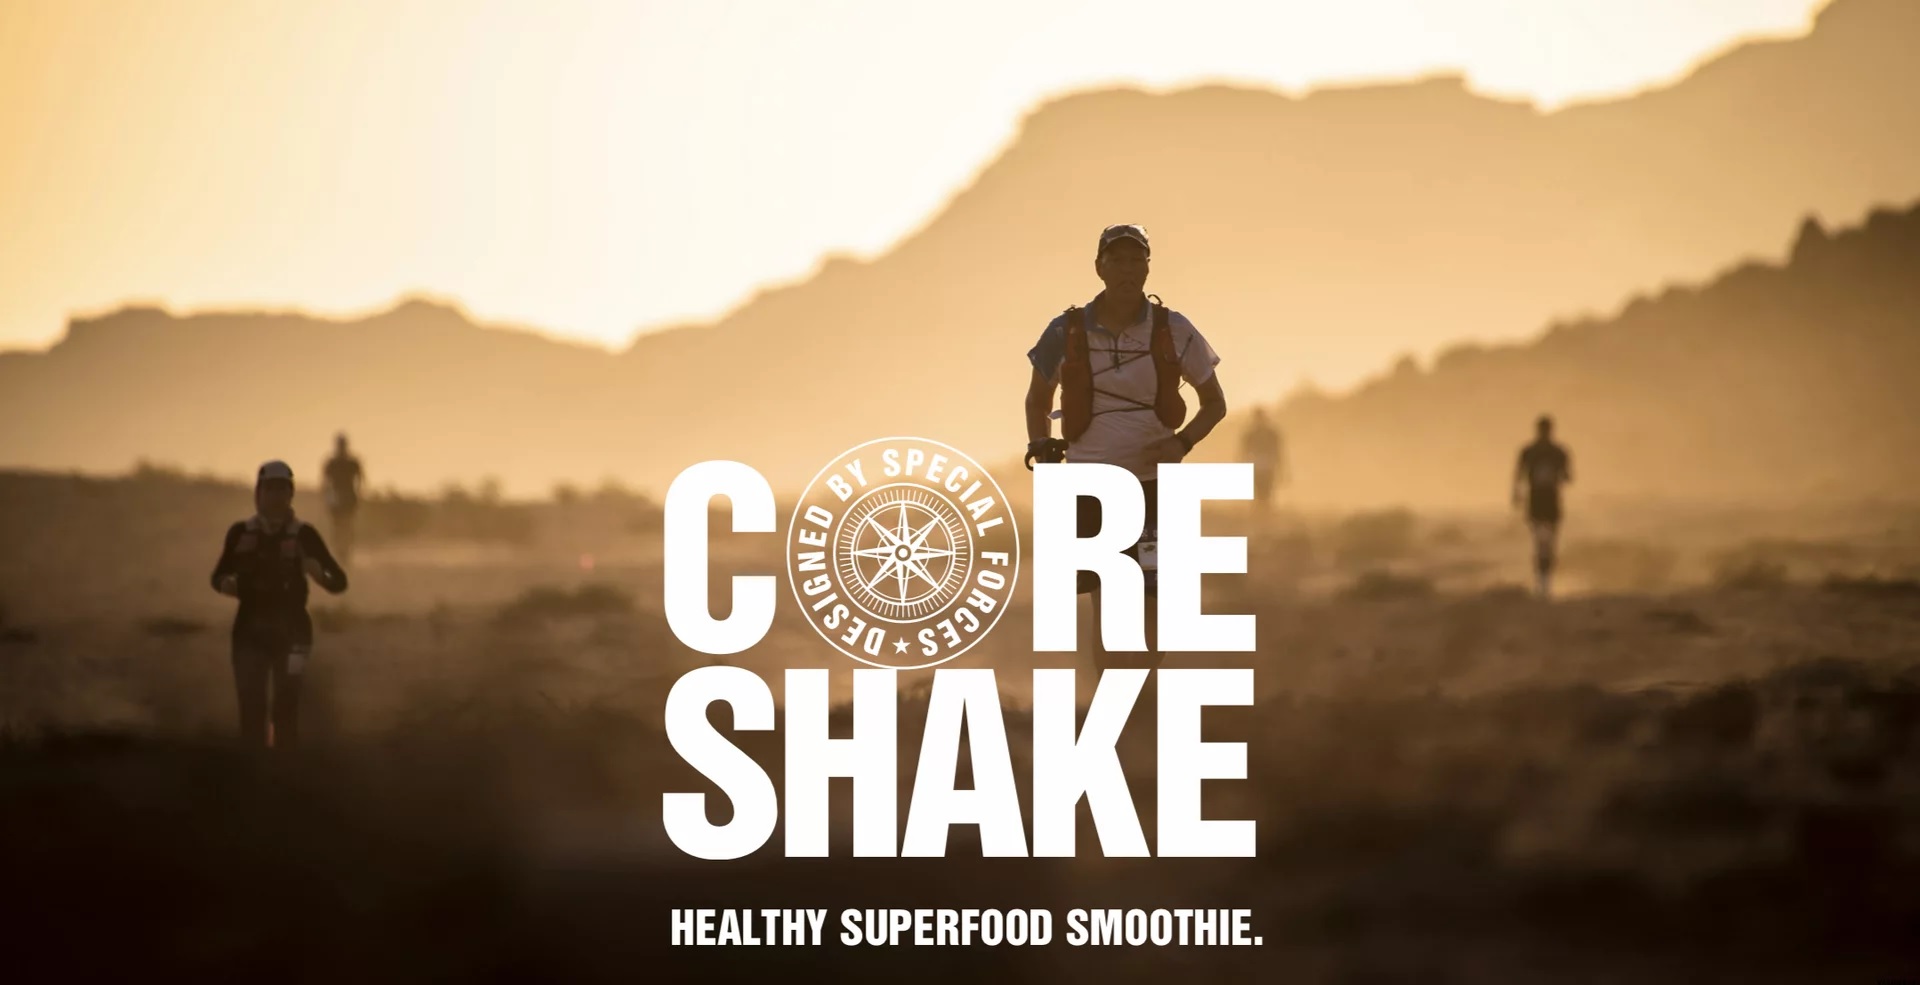 Izberite najboljši proteinski napitek za aktivne posameznike - Core Shake Fresh Green Tactical Foodpack. Učinkovita prehrana za izboljšanje zmogljivosti in regeneracijo. Nakupujte zdaj!